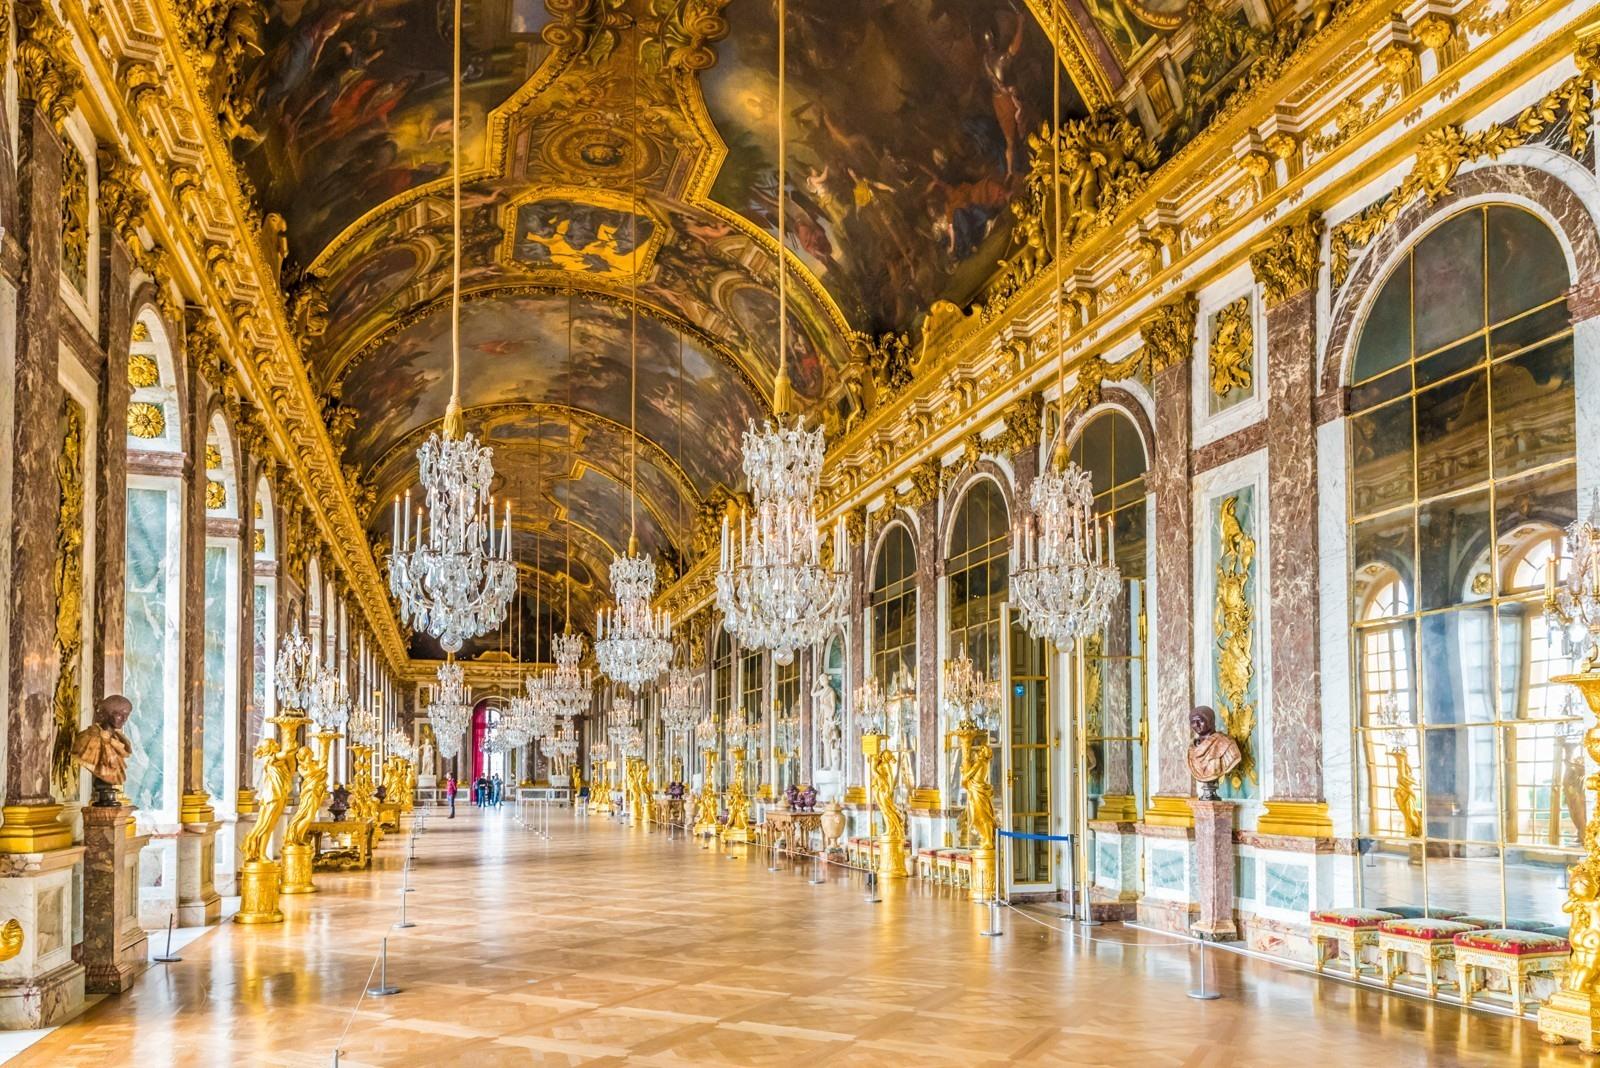 planter Subjectief Uitdrukkelijk Kasteel van Versailles bezoeken? Tips, info + wachtrijen vermijden?